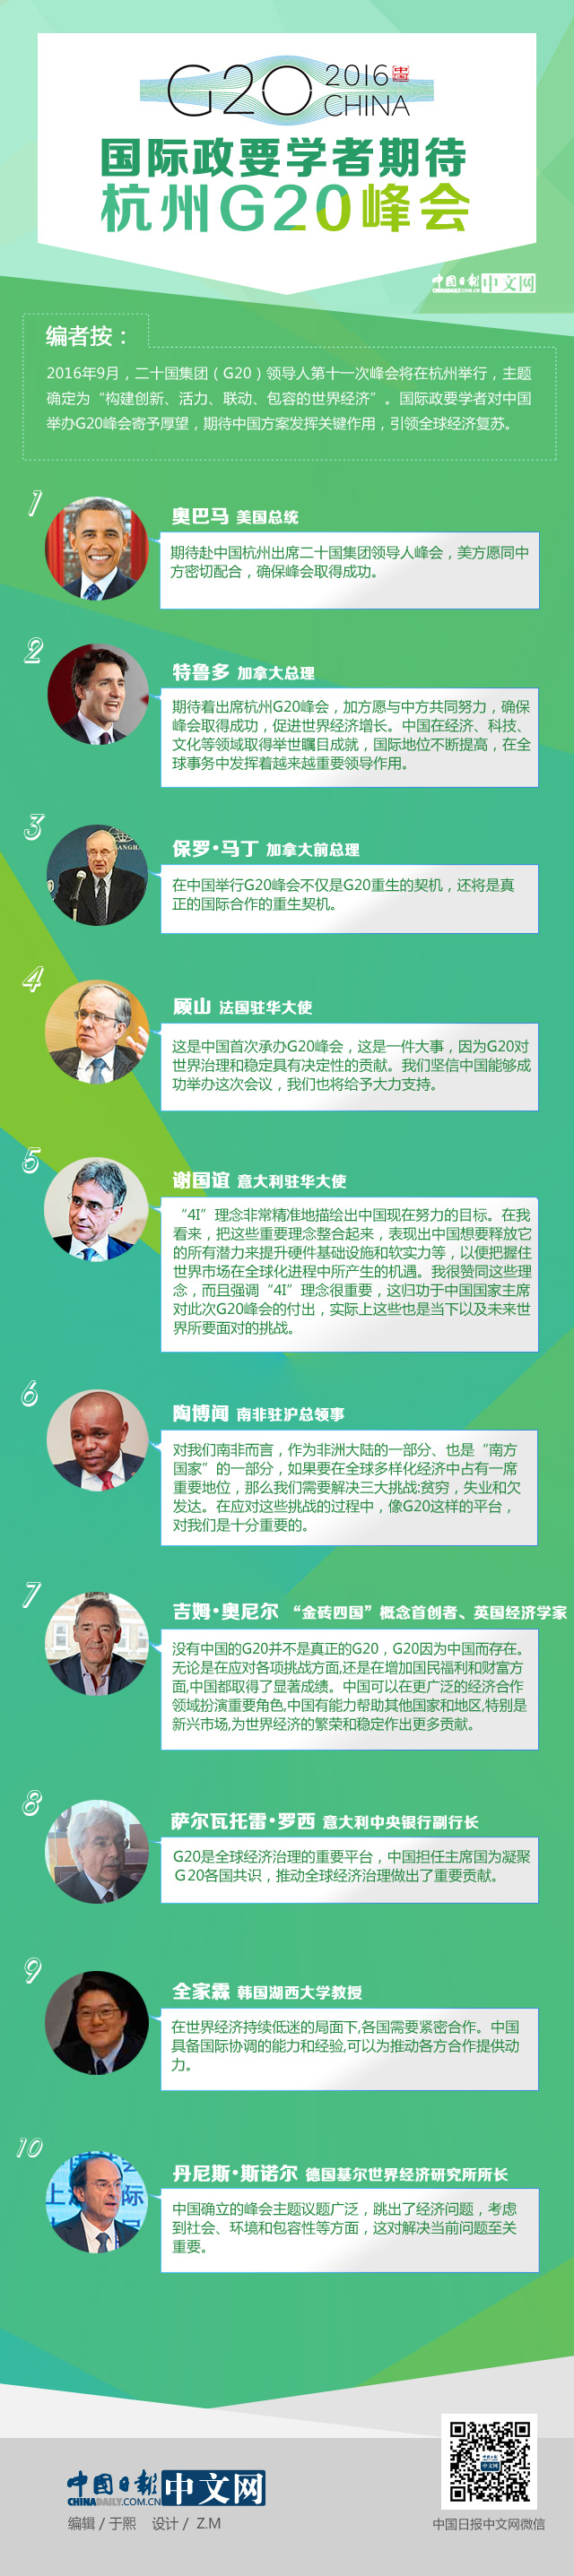 國際政要學者期待杭州G20峰會